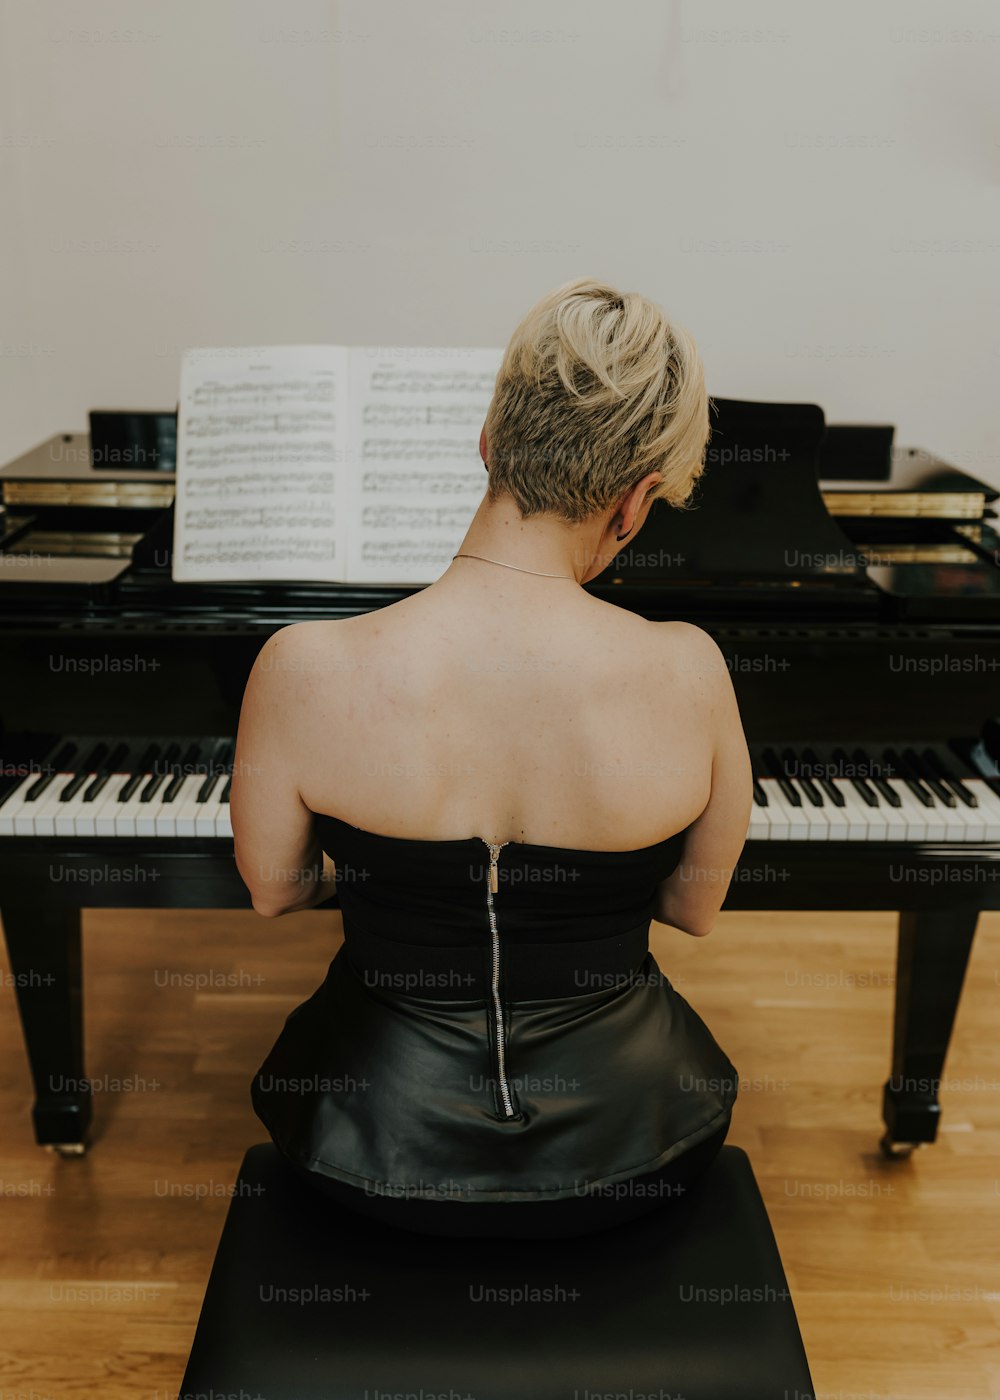 ピアノの前に座っている黒いドレスを着た女性